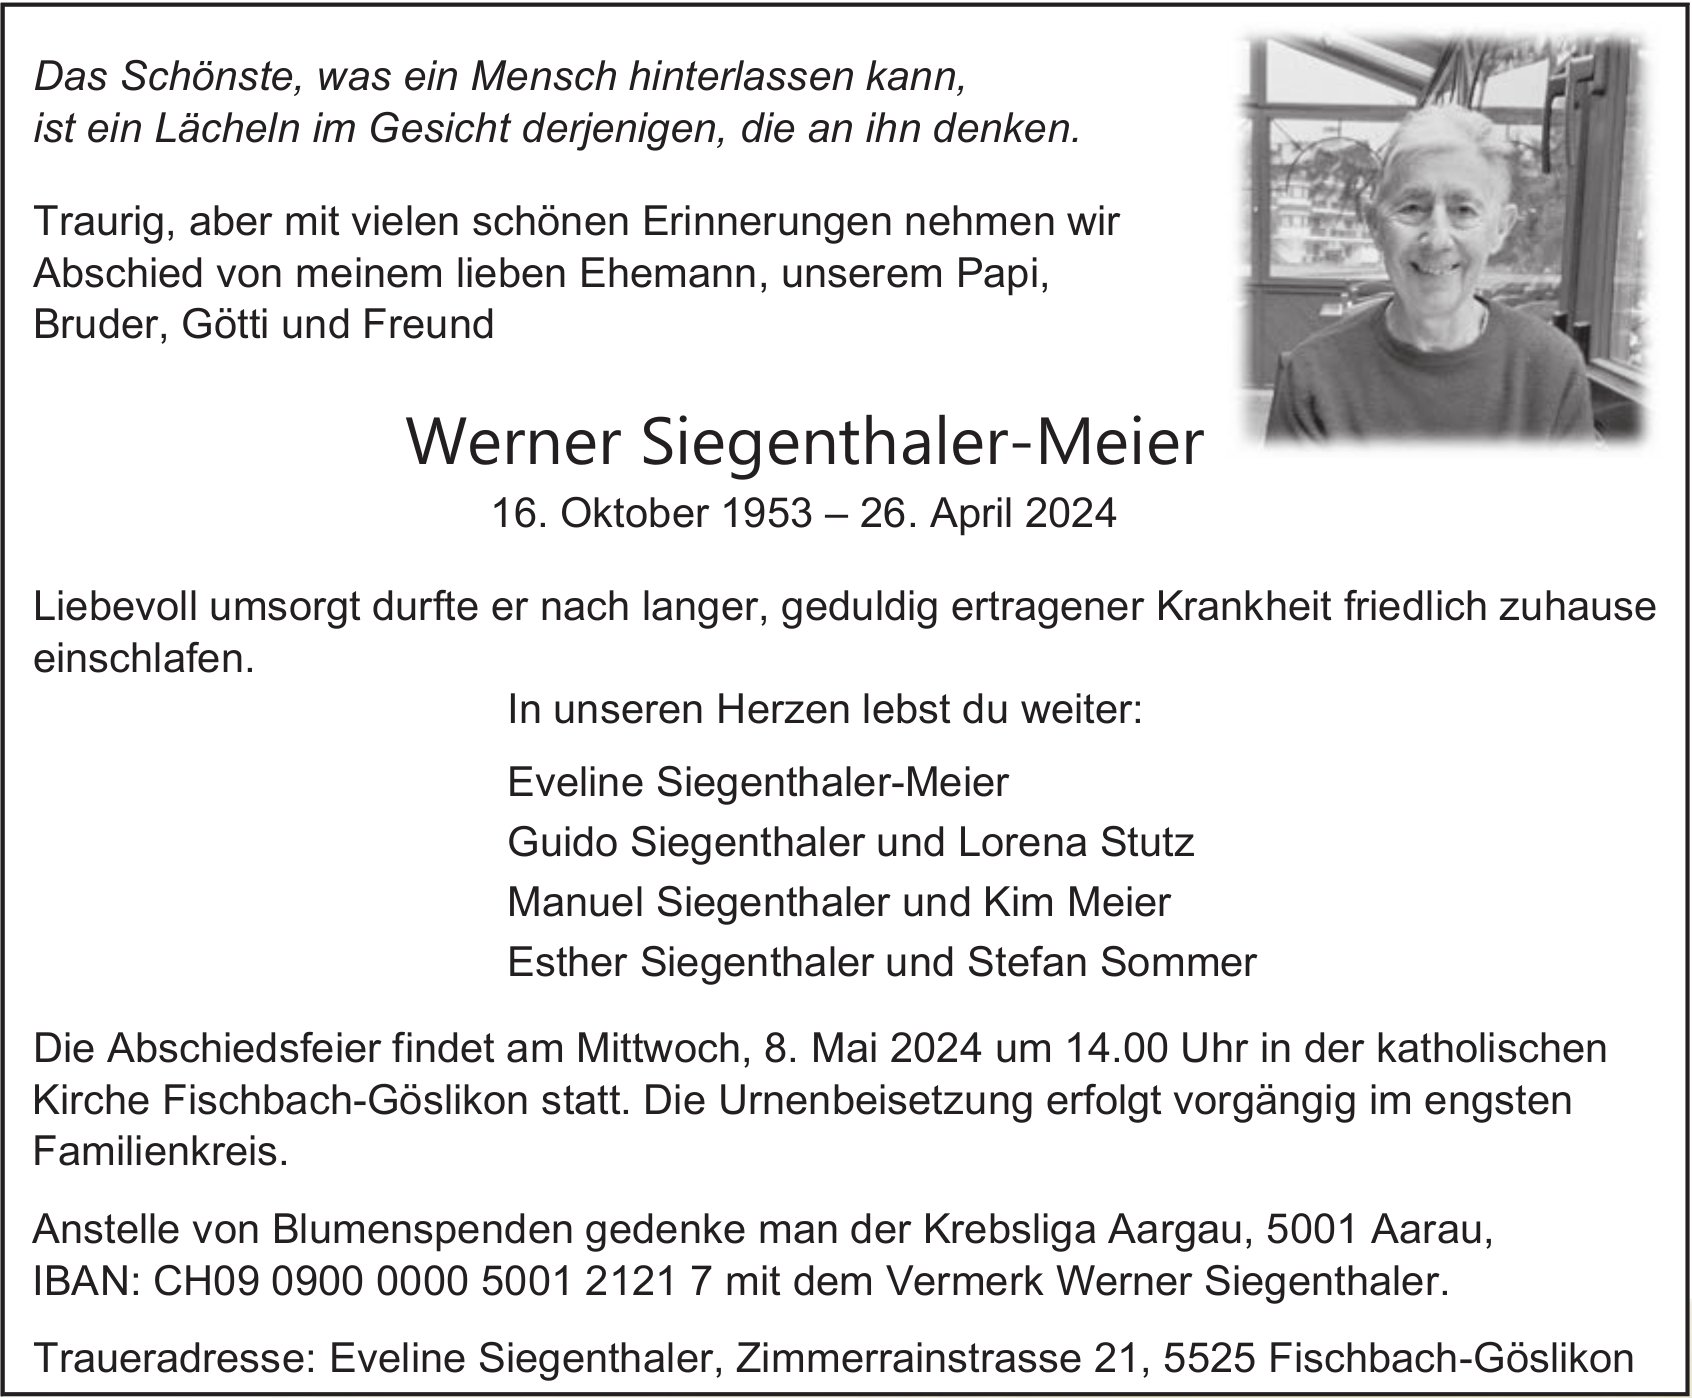 Werner Siegenthaler-Meier, April 2024 / TA